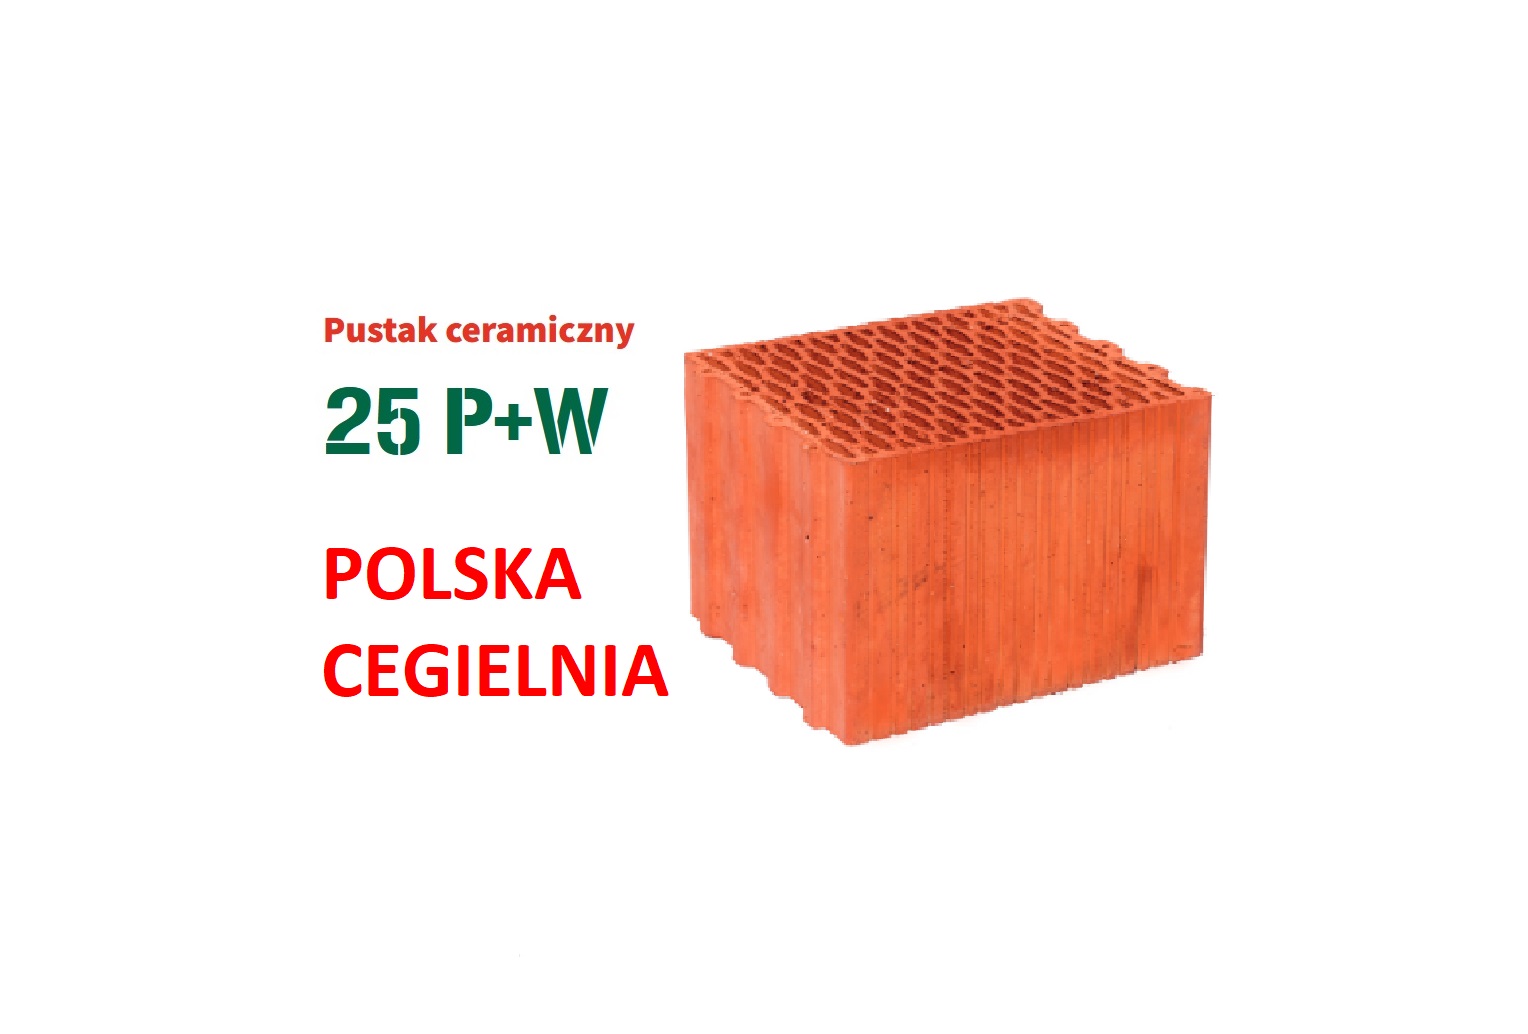 Pustak Ceramiczny Keram 25 P+W Polski Producent Nowa Jakość